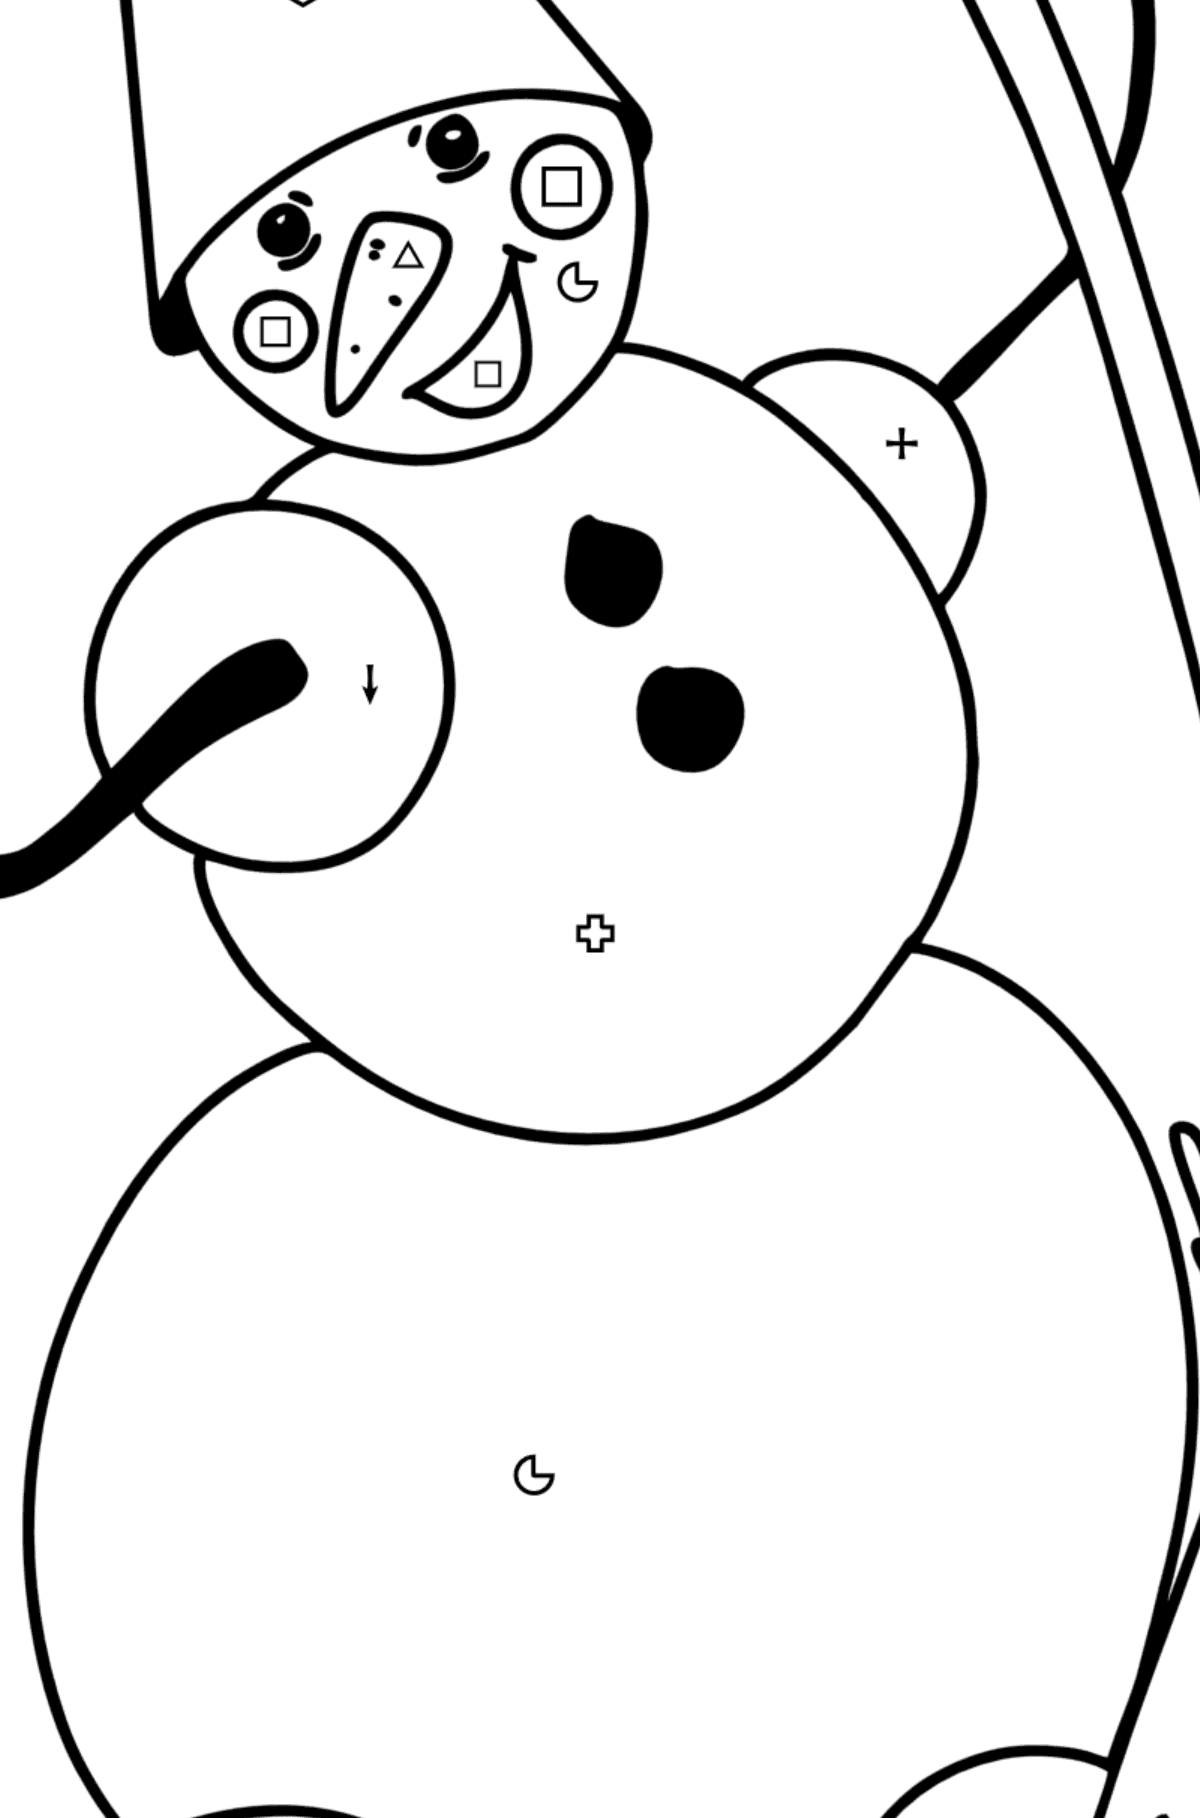 Kleurplaat sneeuwpop met bezem - Kleuren op symbolen werkbladen voor kinderen